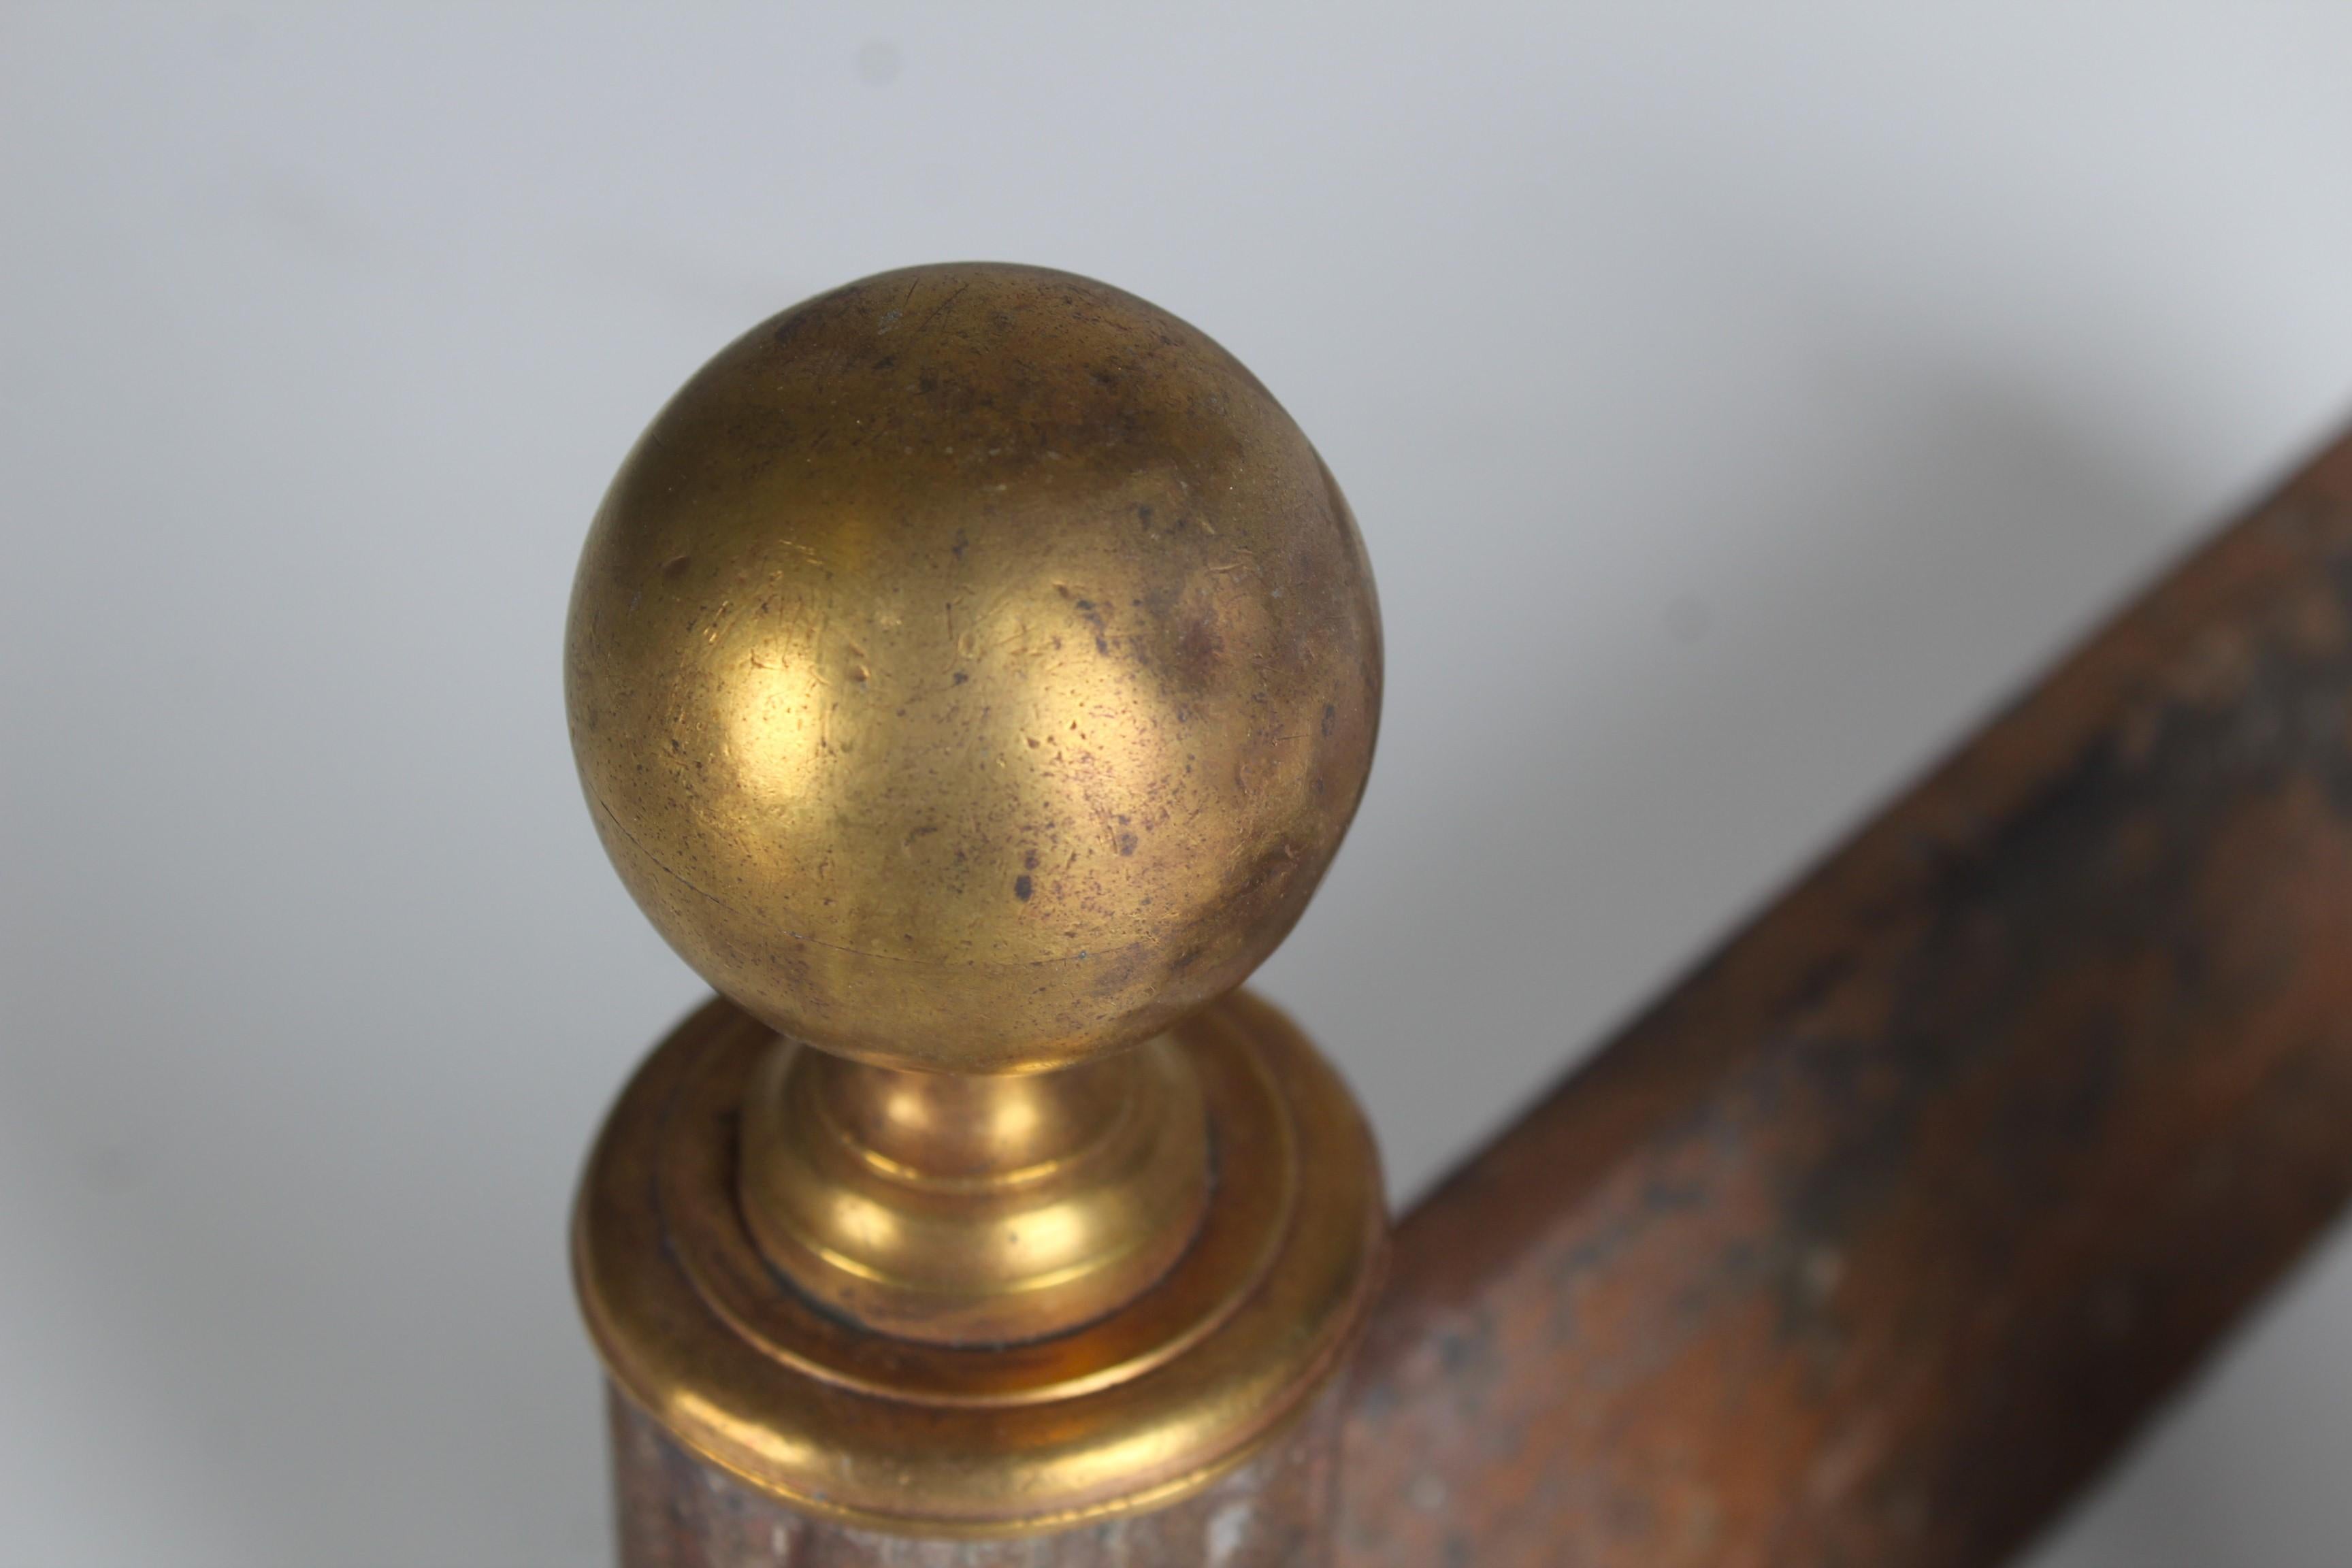 Paire de magnifiques chenets avec une décoration en forme de globe en laiton.
France, vers 1850.
Fer solide en bon état compte tenu de son âge.

Les chiens de feu sont utilisés comme support pour le bois de chauffage dans une cheminée. Ils sont